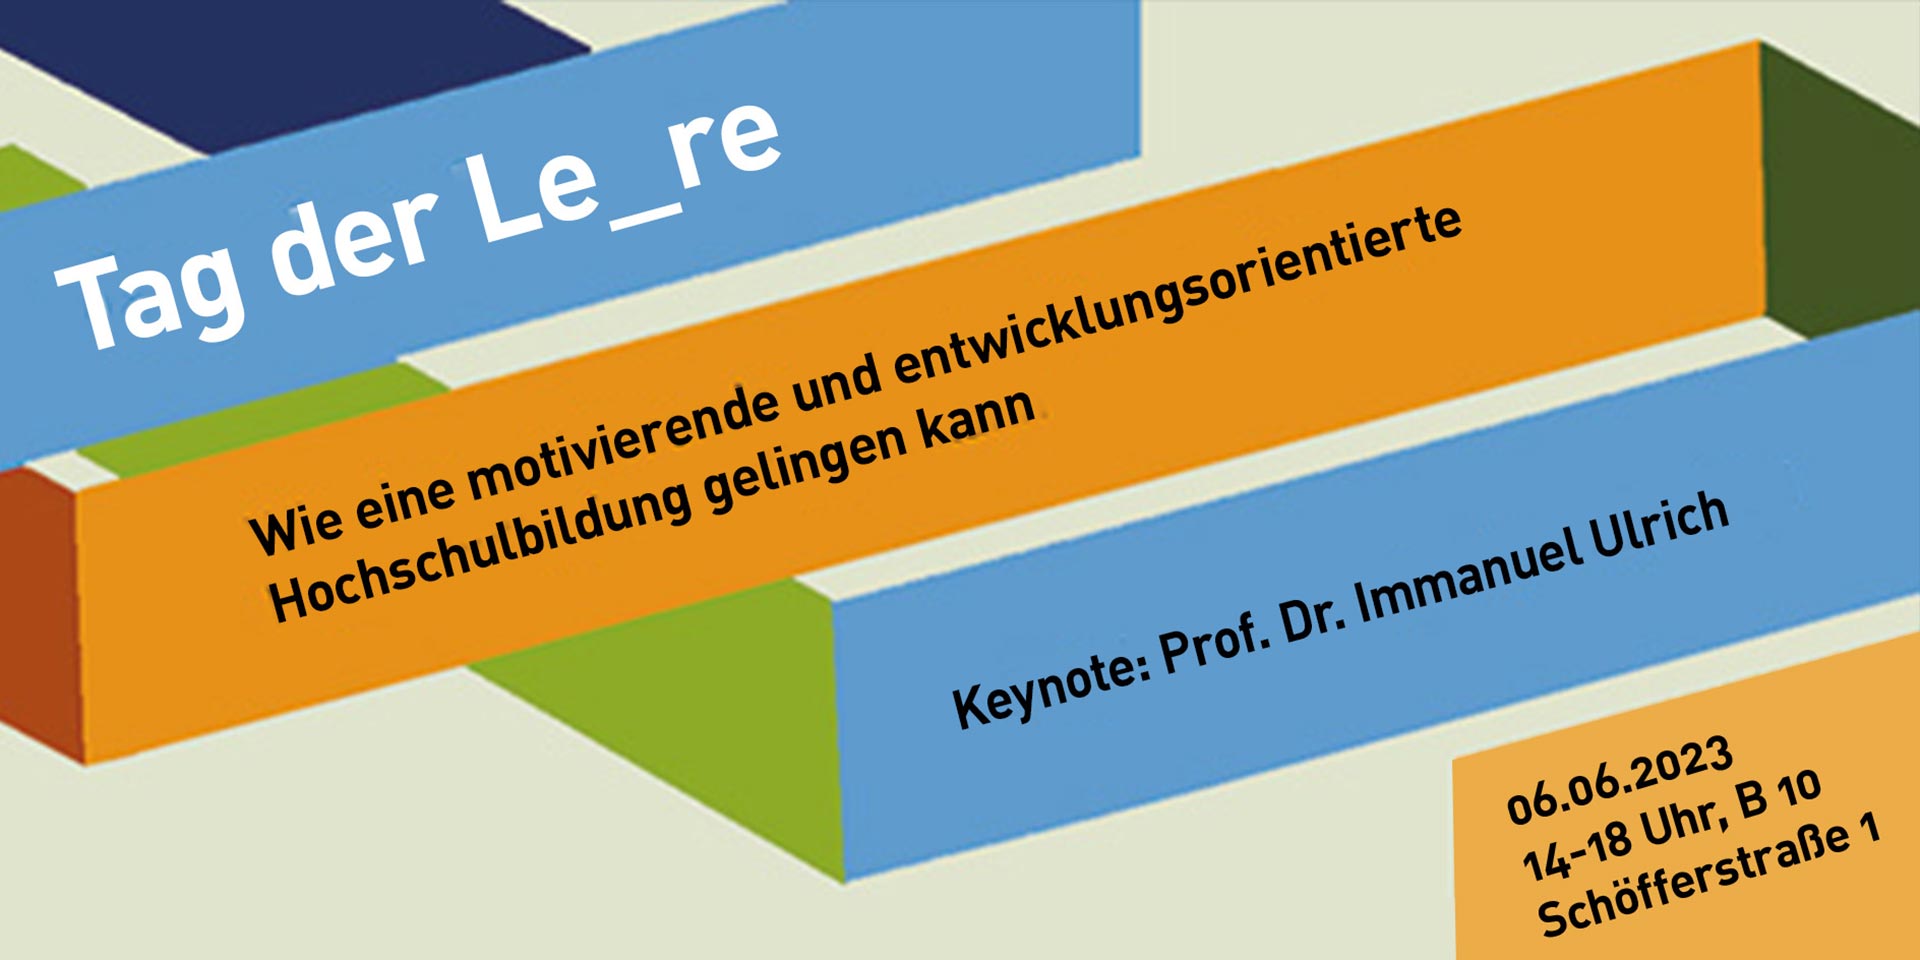 Werbebanner für den Tag der Le_re am 6.6.2023 von 14-18 Uhr, Campus Darmstadt B10, Architektur